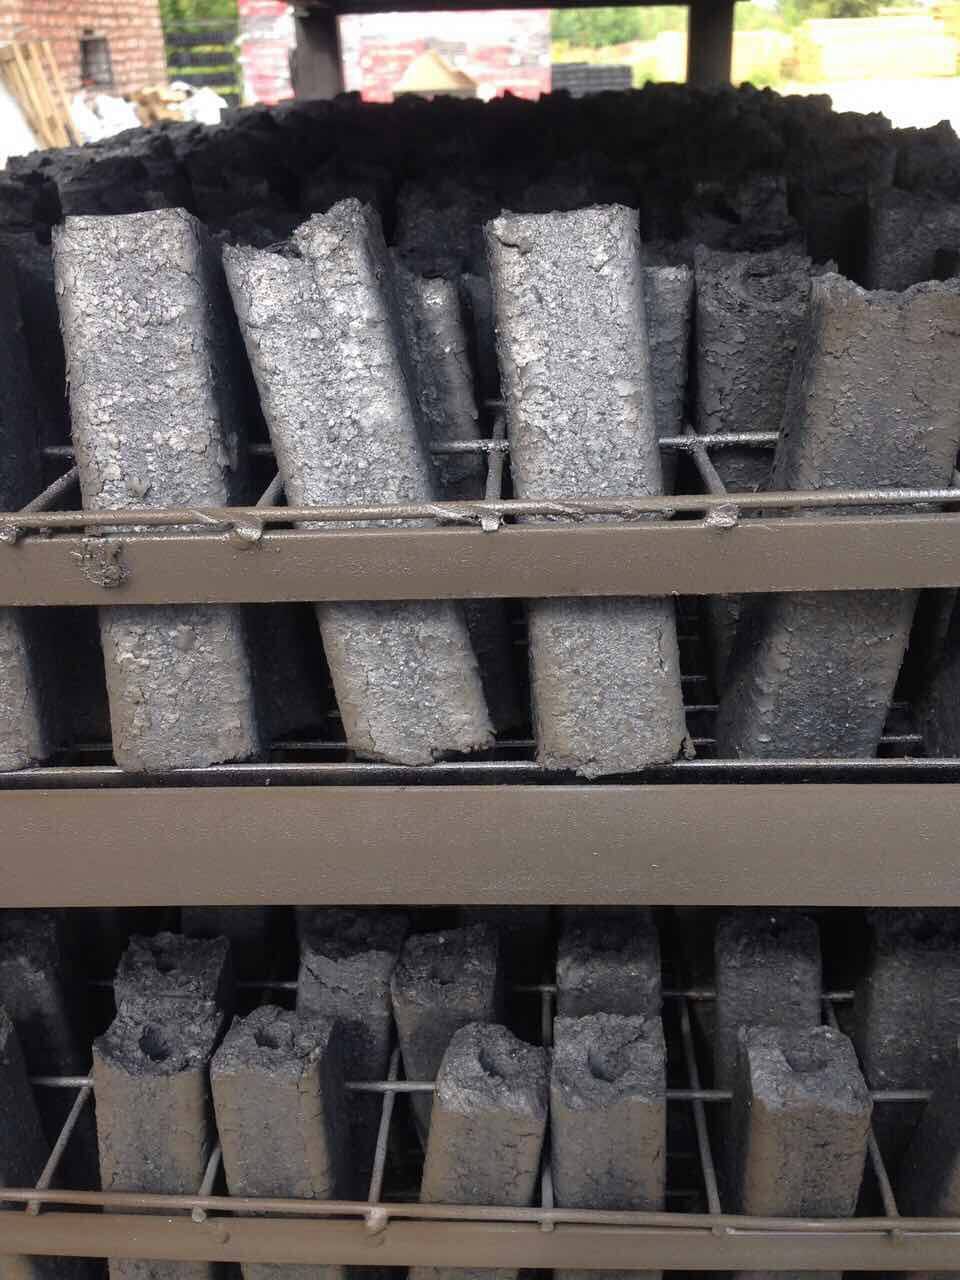 Брикетирование древесного угля на заводе и в домашних условиях